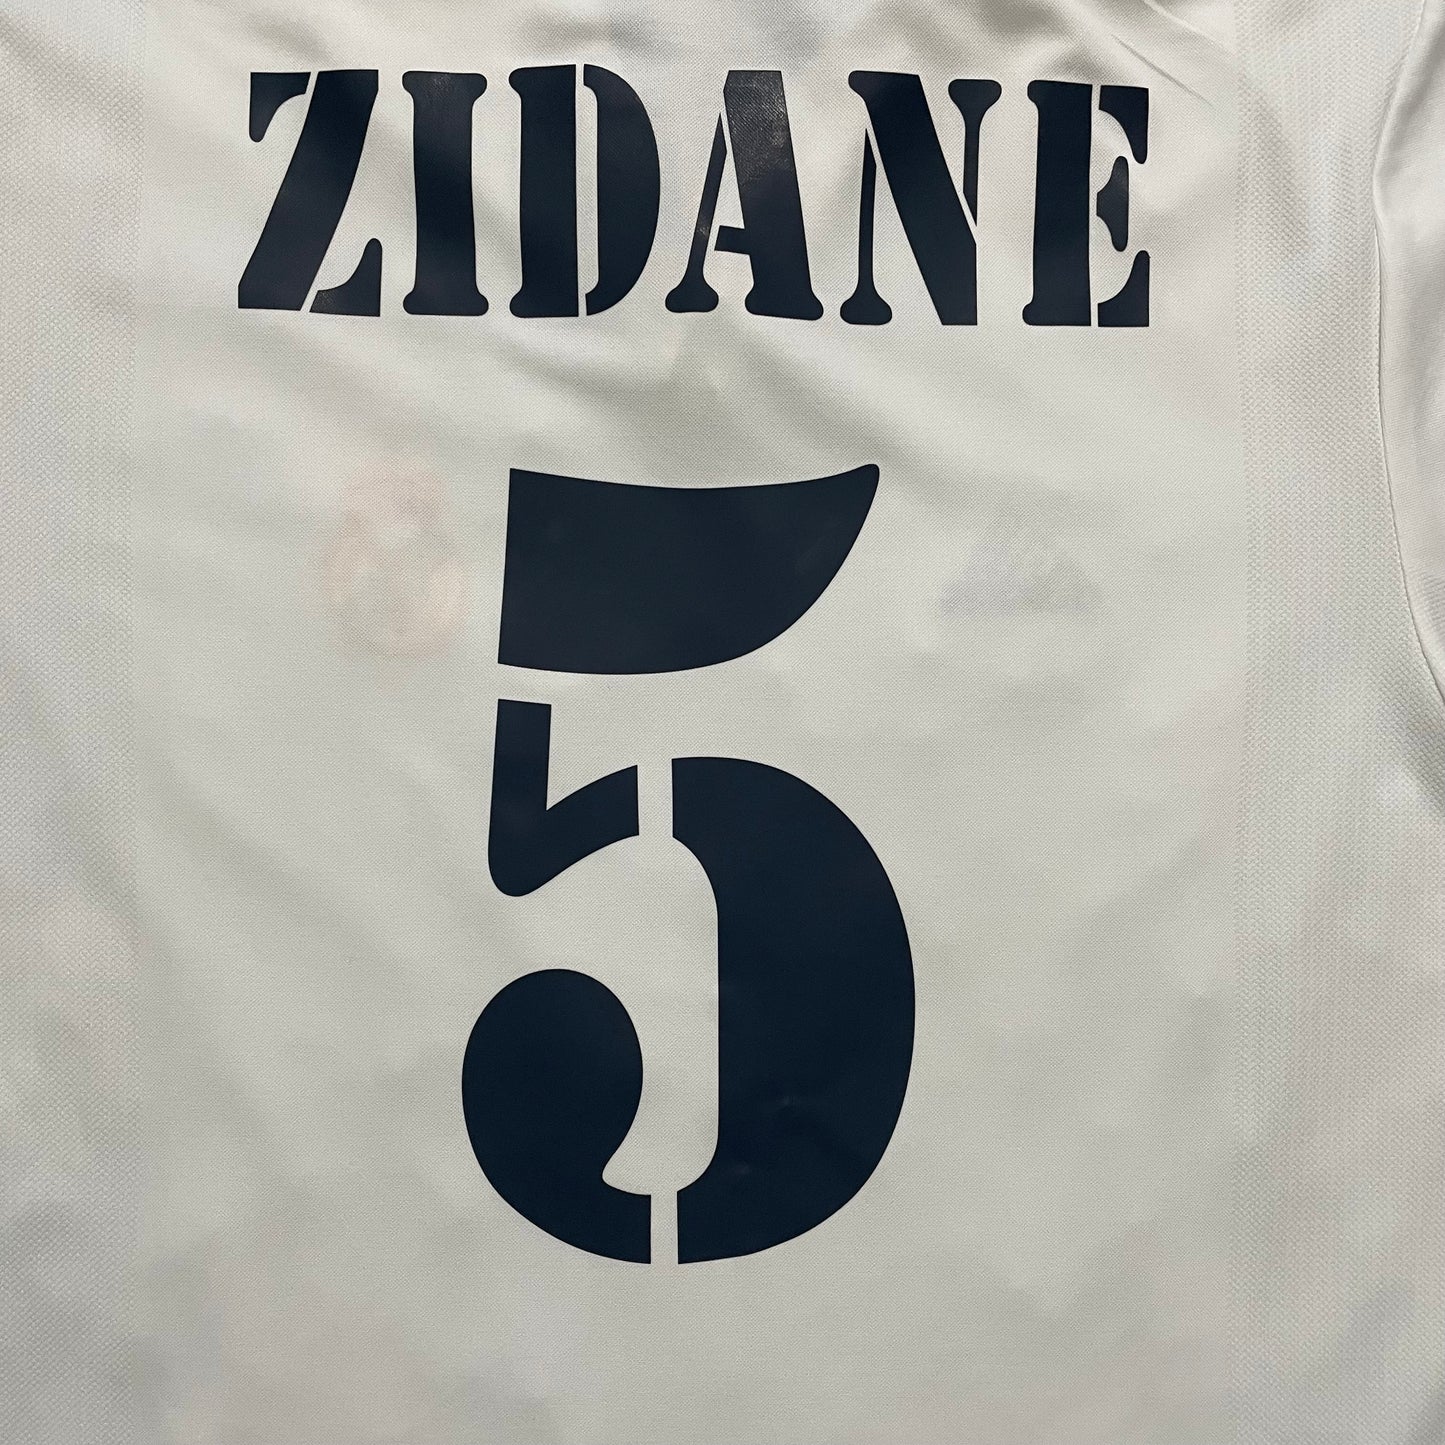 <tc>2001-2002 Real Madrid CF camiseta local Centenario #5 Zidane (M)</tc>